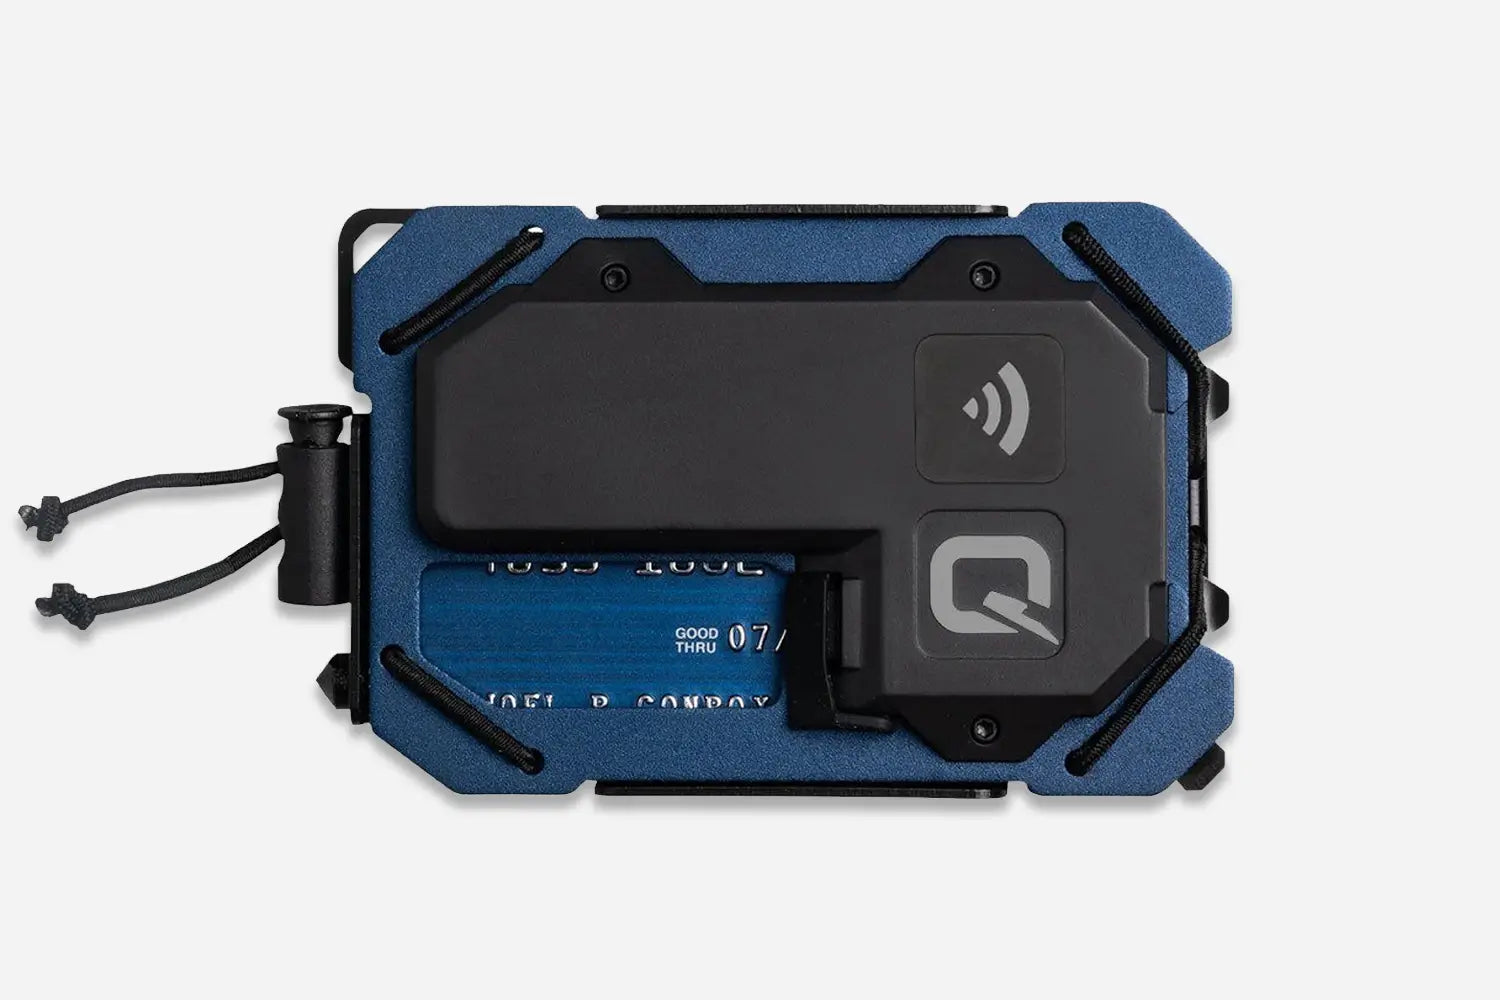 Quiqlite Smart Wallet